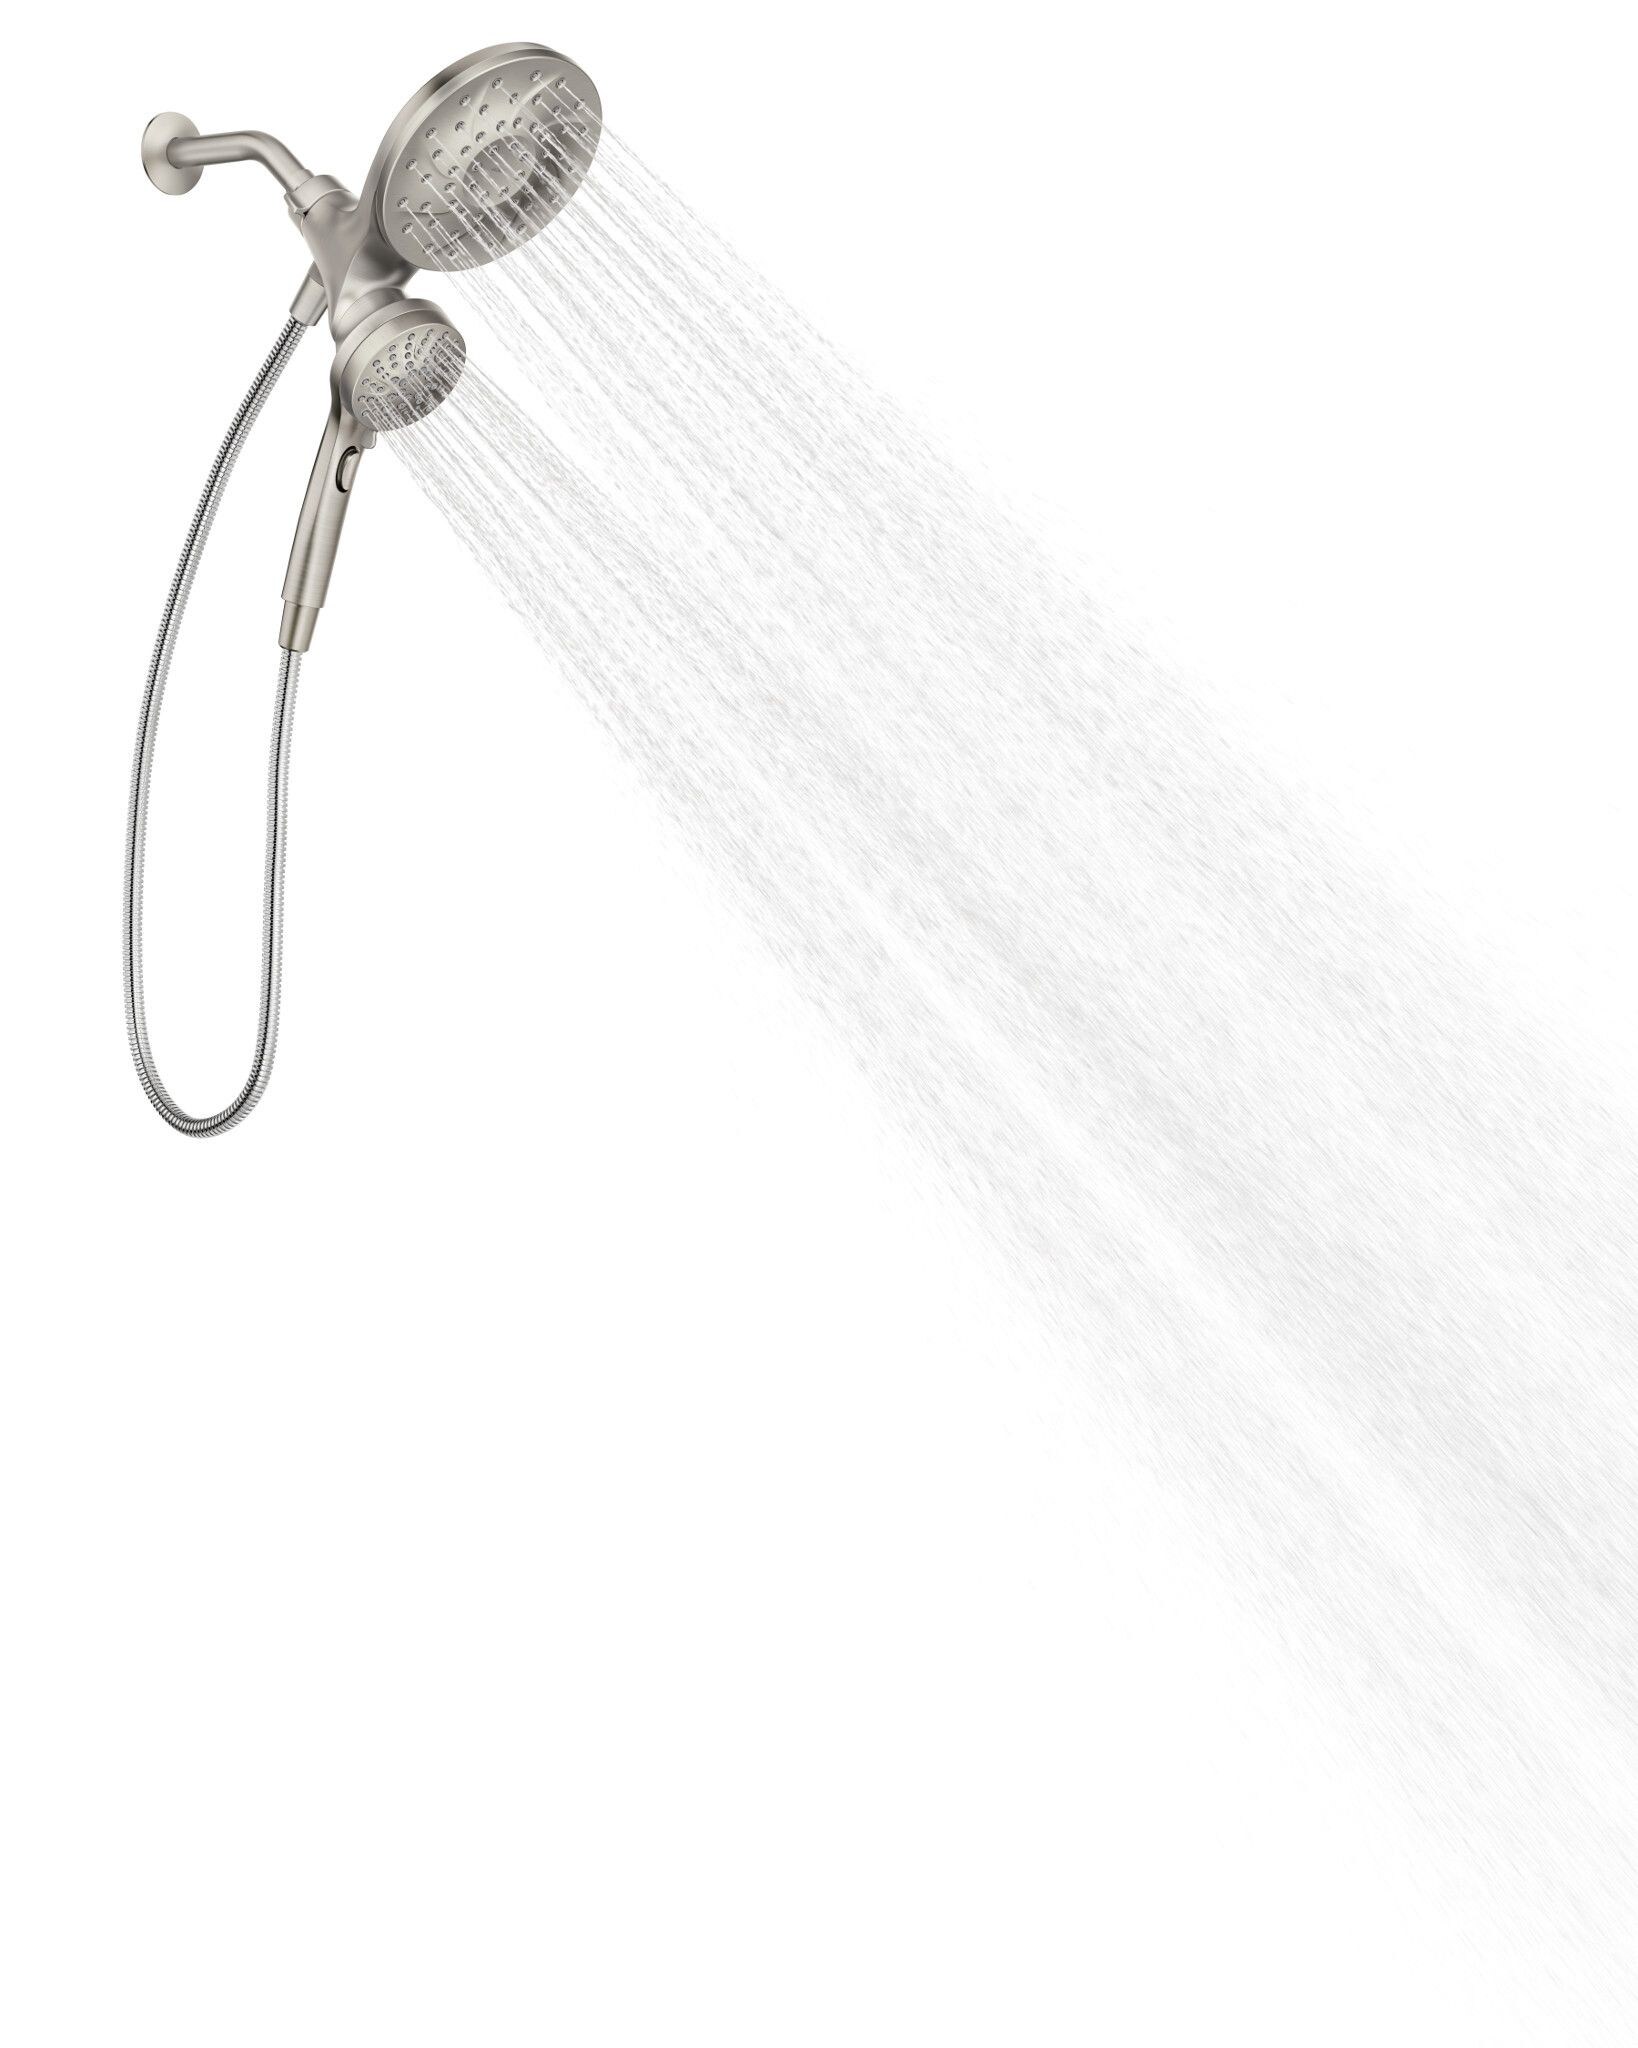 Moen Engage Spot Resist Brushed Nickel Handheld Shower 2.5-GPM (9.5-LPM)